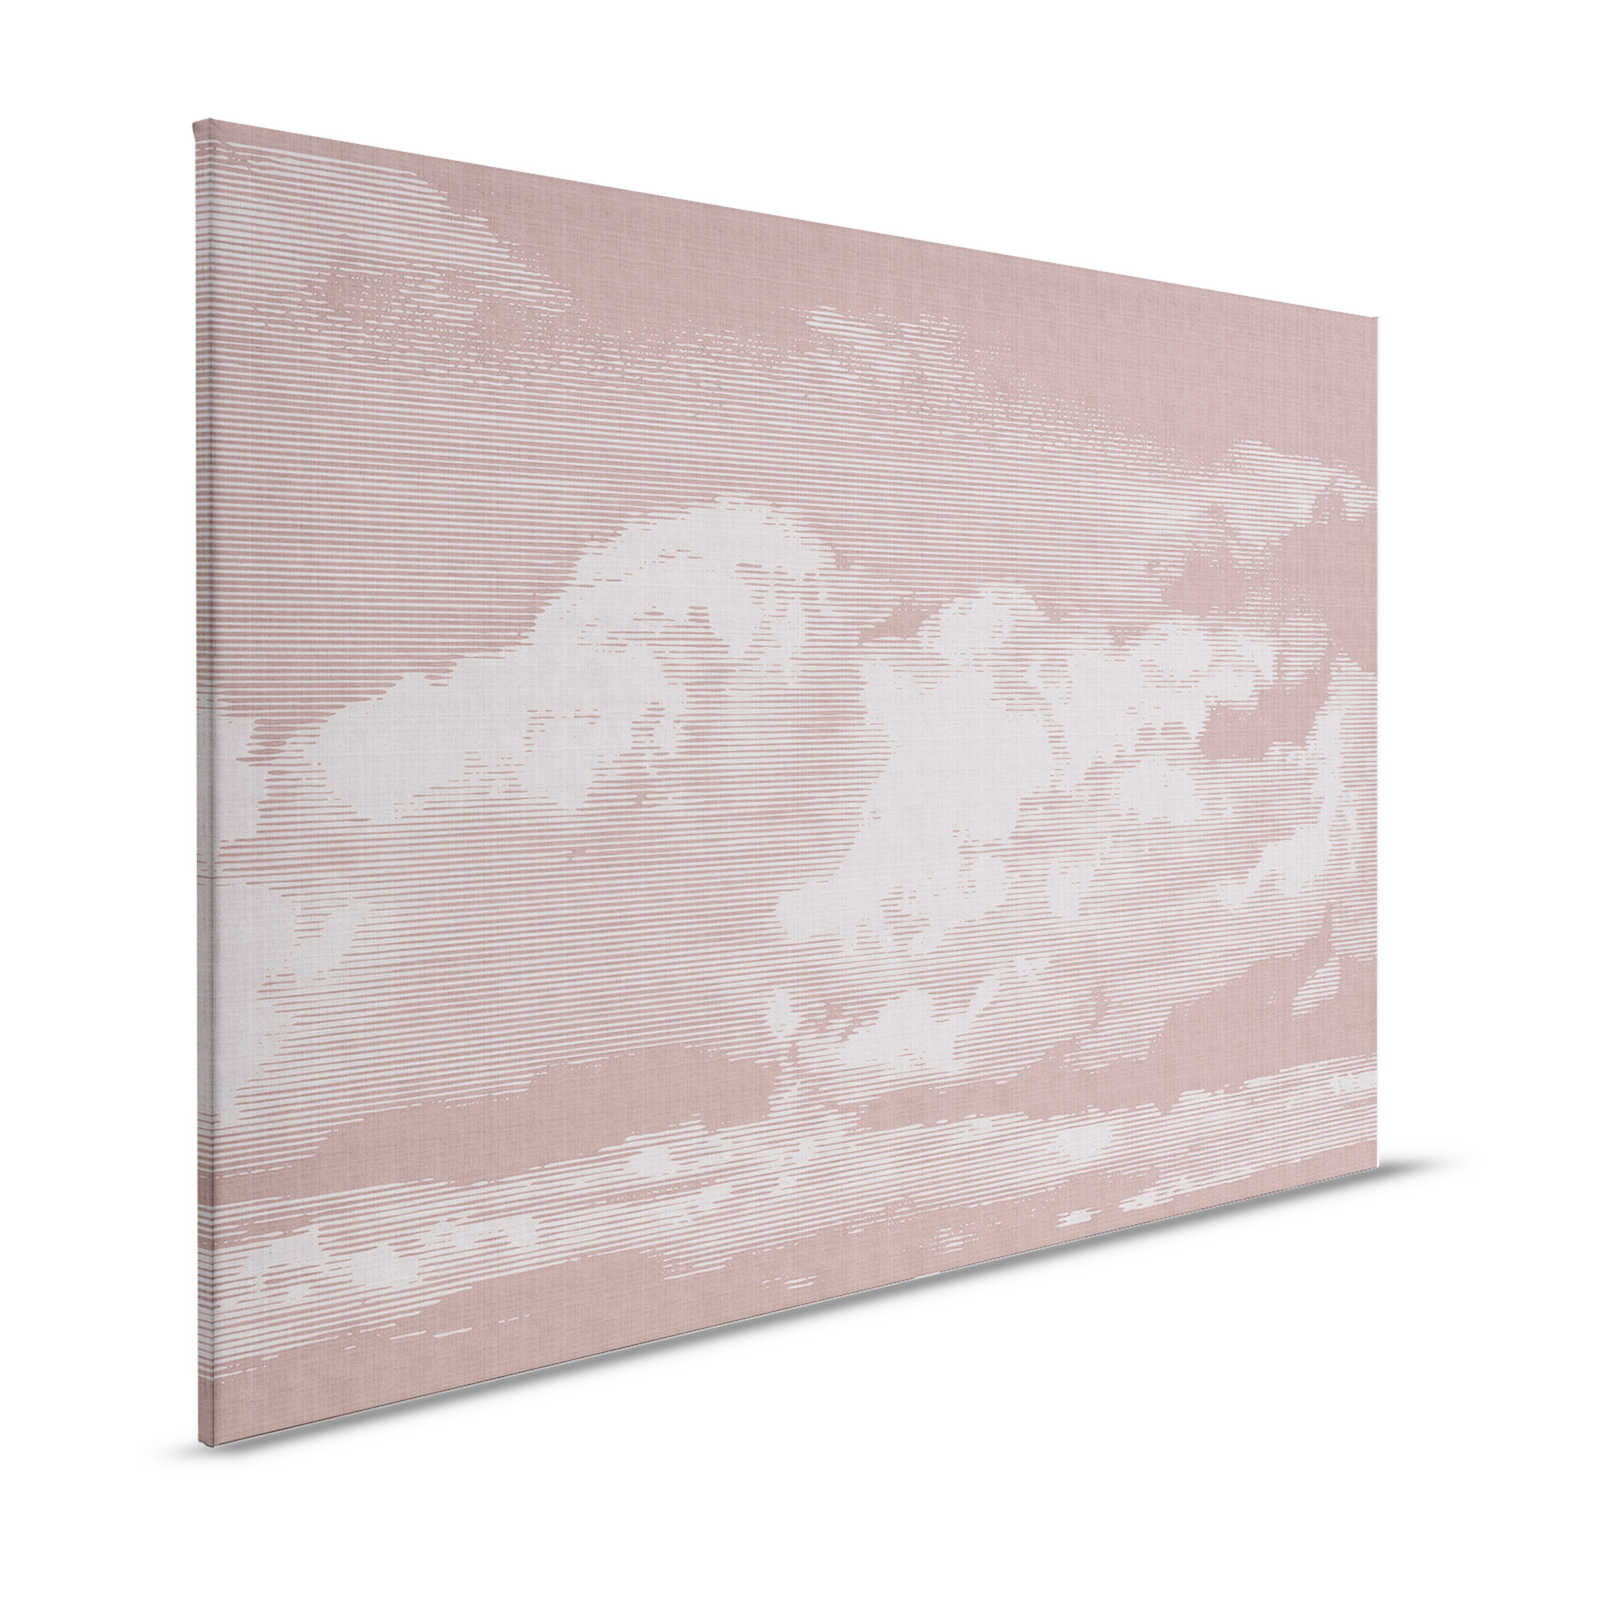 Clouds 3 - Hemelse canvasfoto met wolkenmotief - Natuurlijke linnenlook - 1,20 m x 0,80 m
